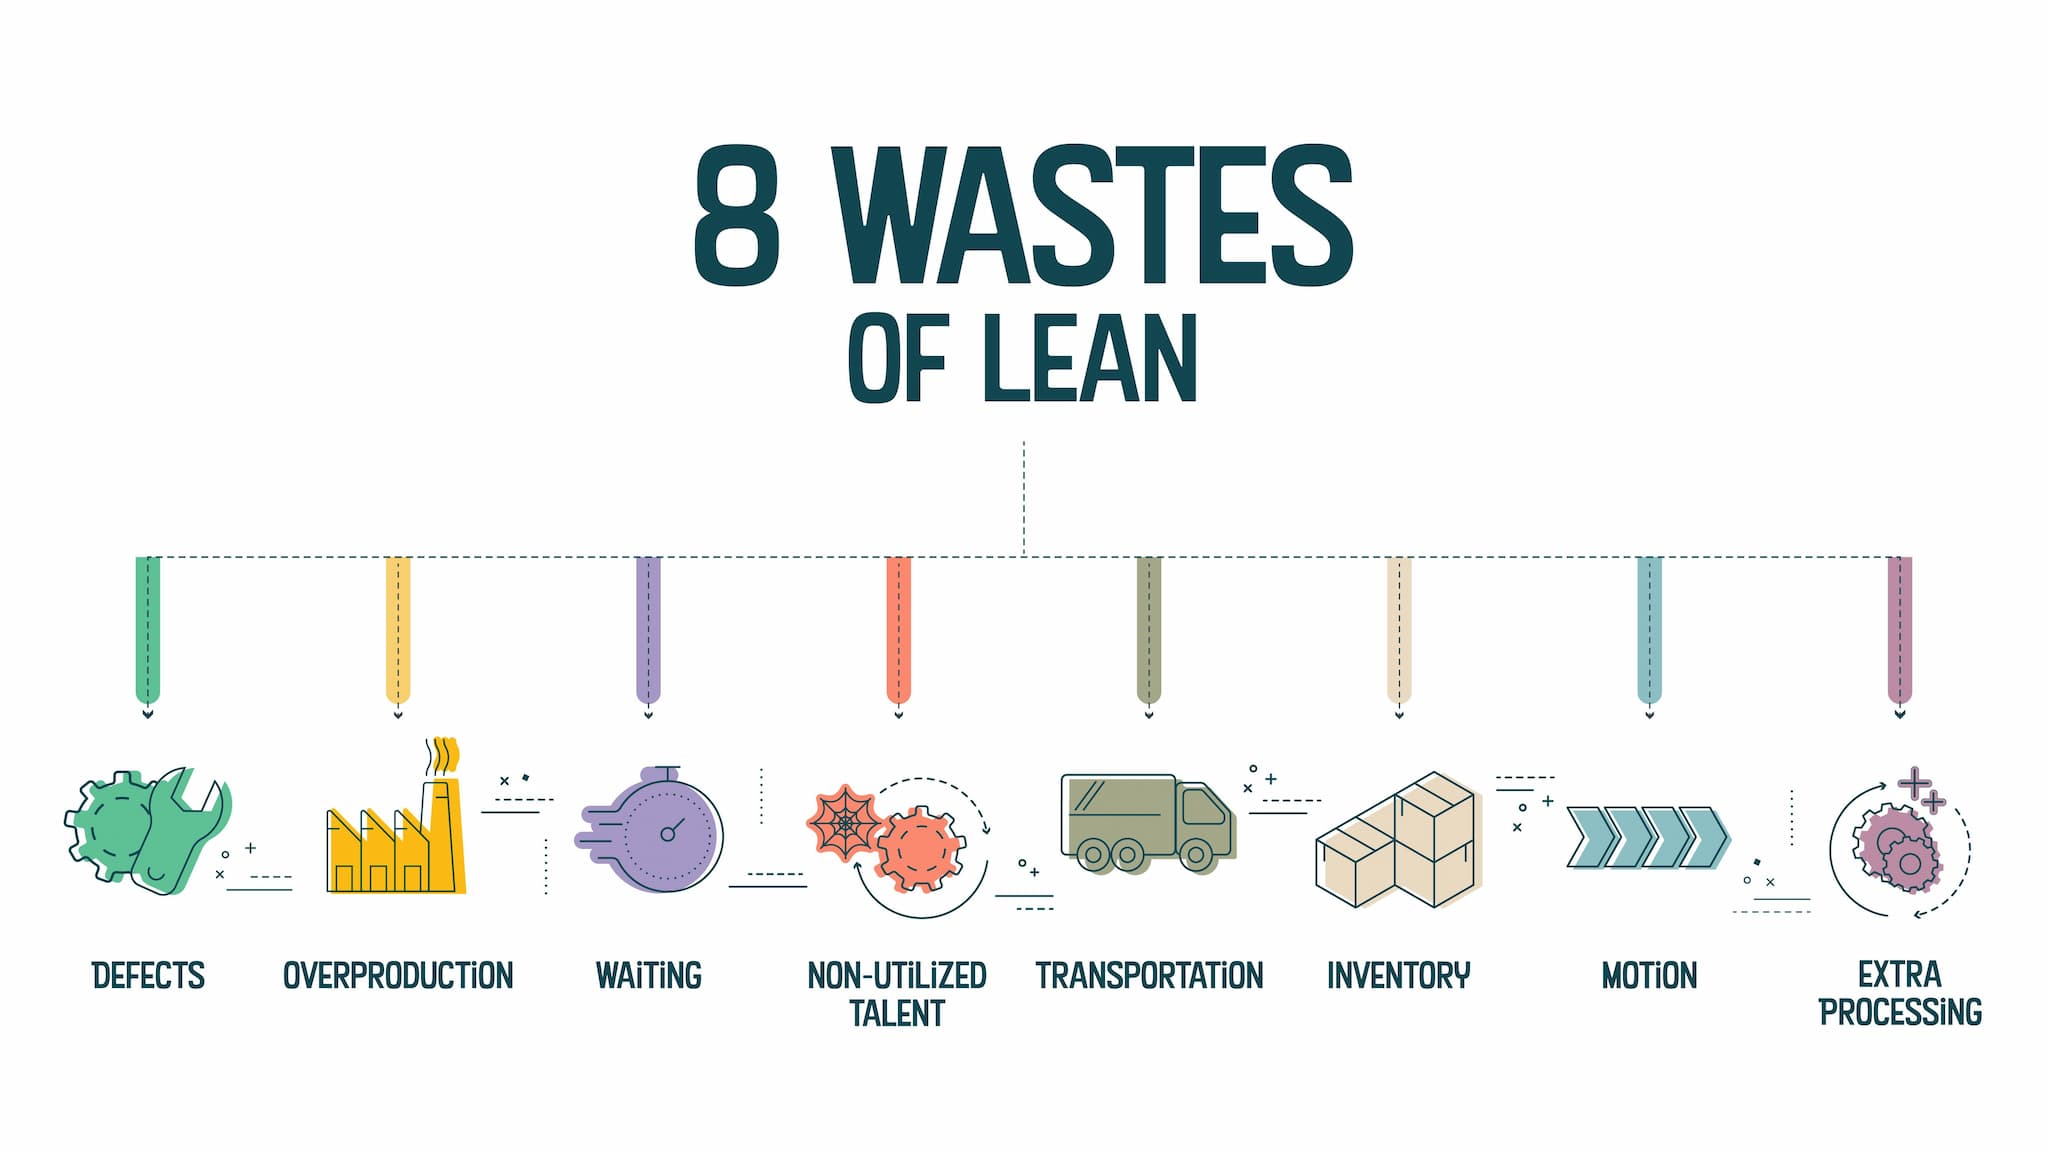 Diagramm mit den 8 Verschwendungsarten von Lean